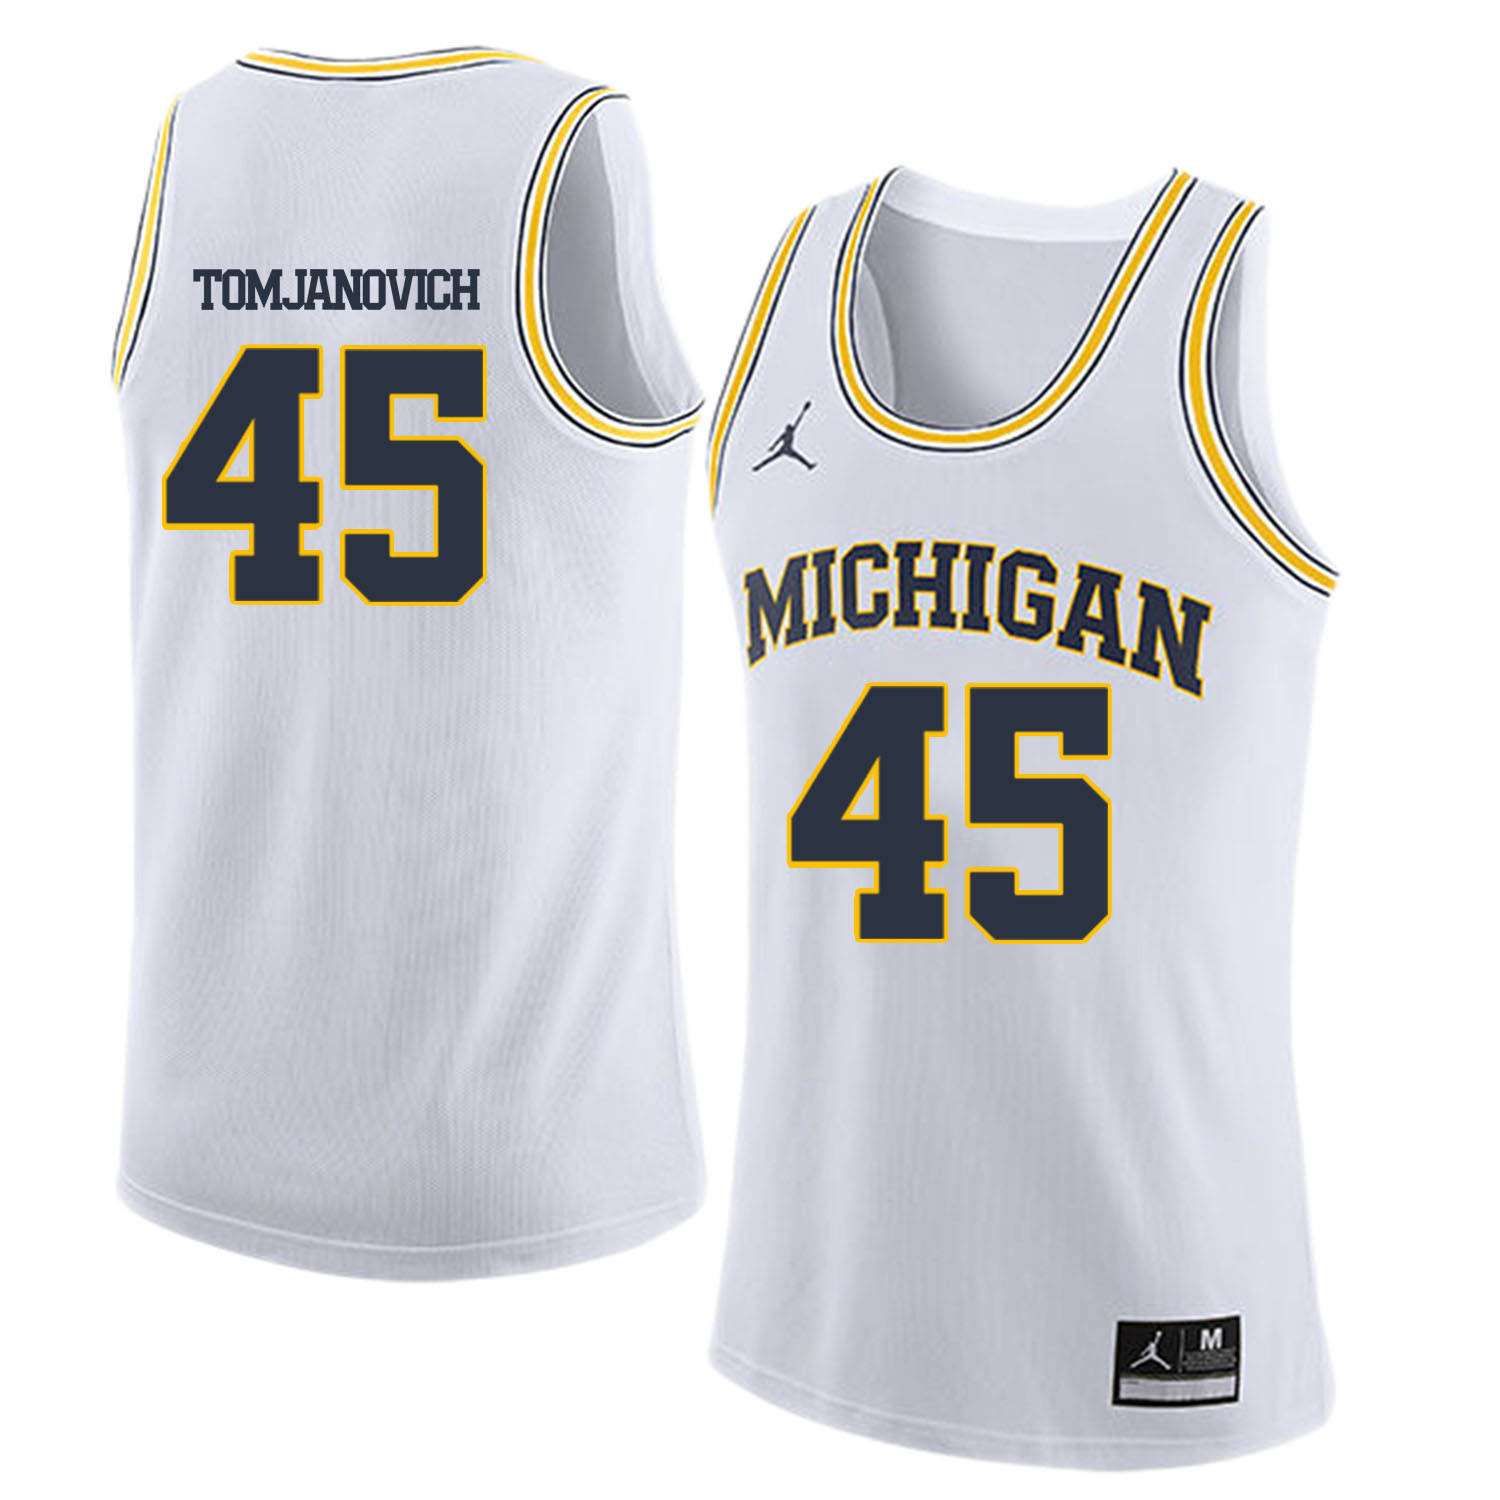 University of Michigan 45 Rudy Tomjanovich White College Basketball Jersey